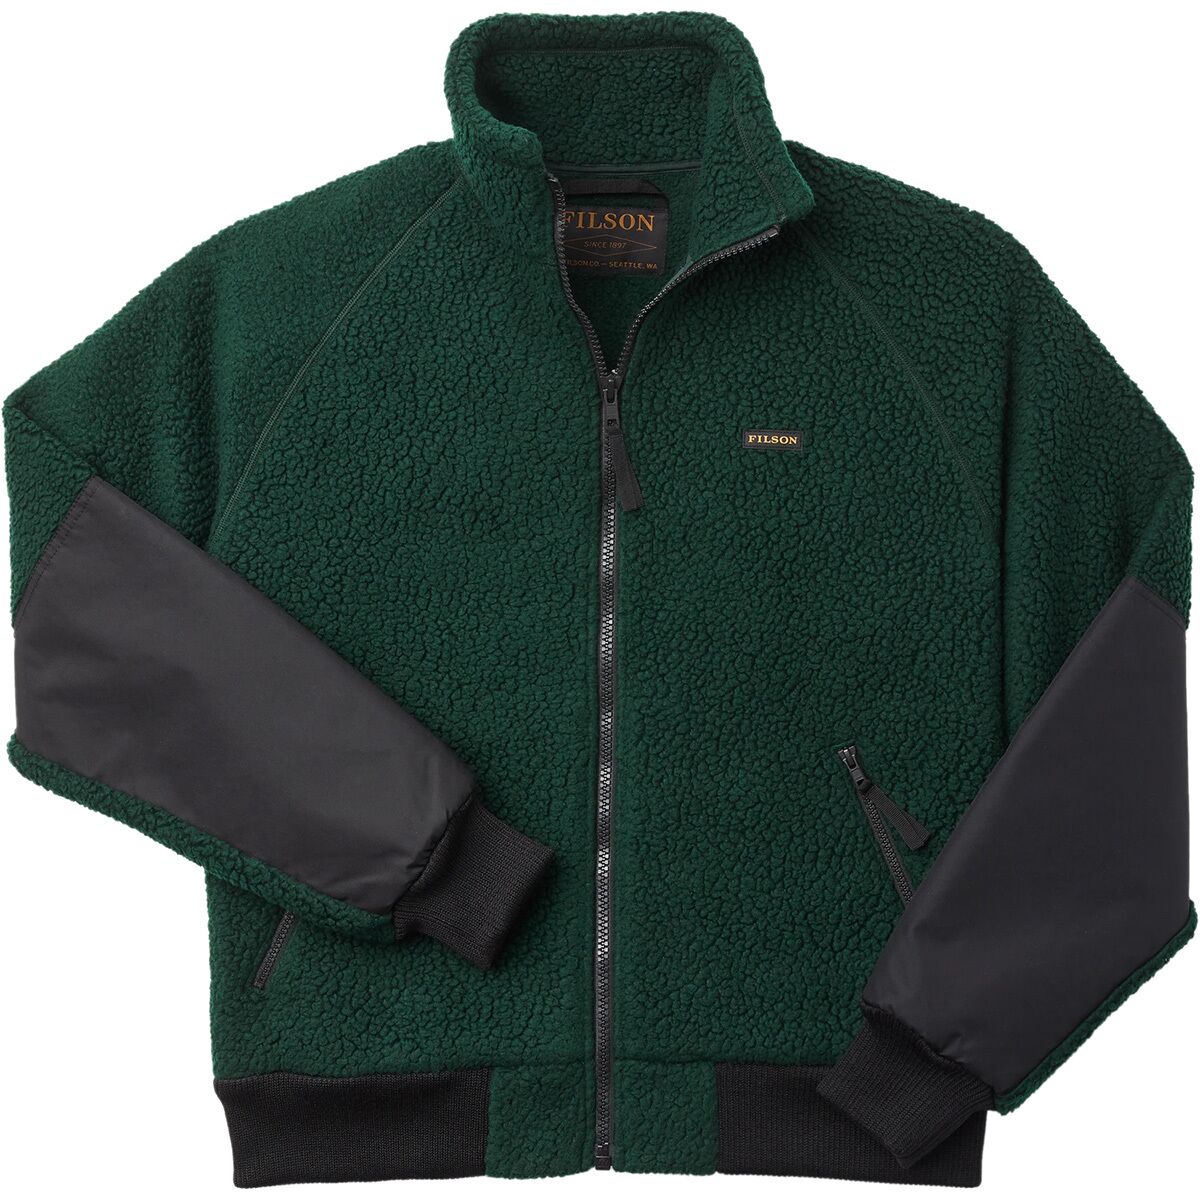 Filson Sherpa Fleece Jacket - Men's product image